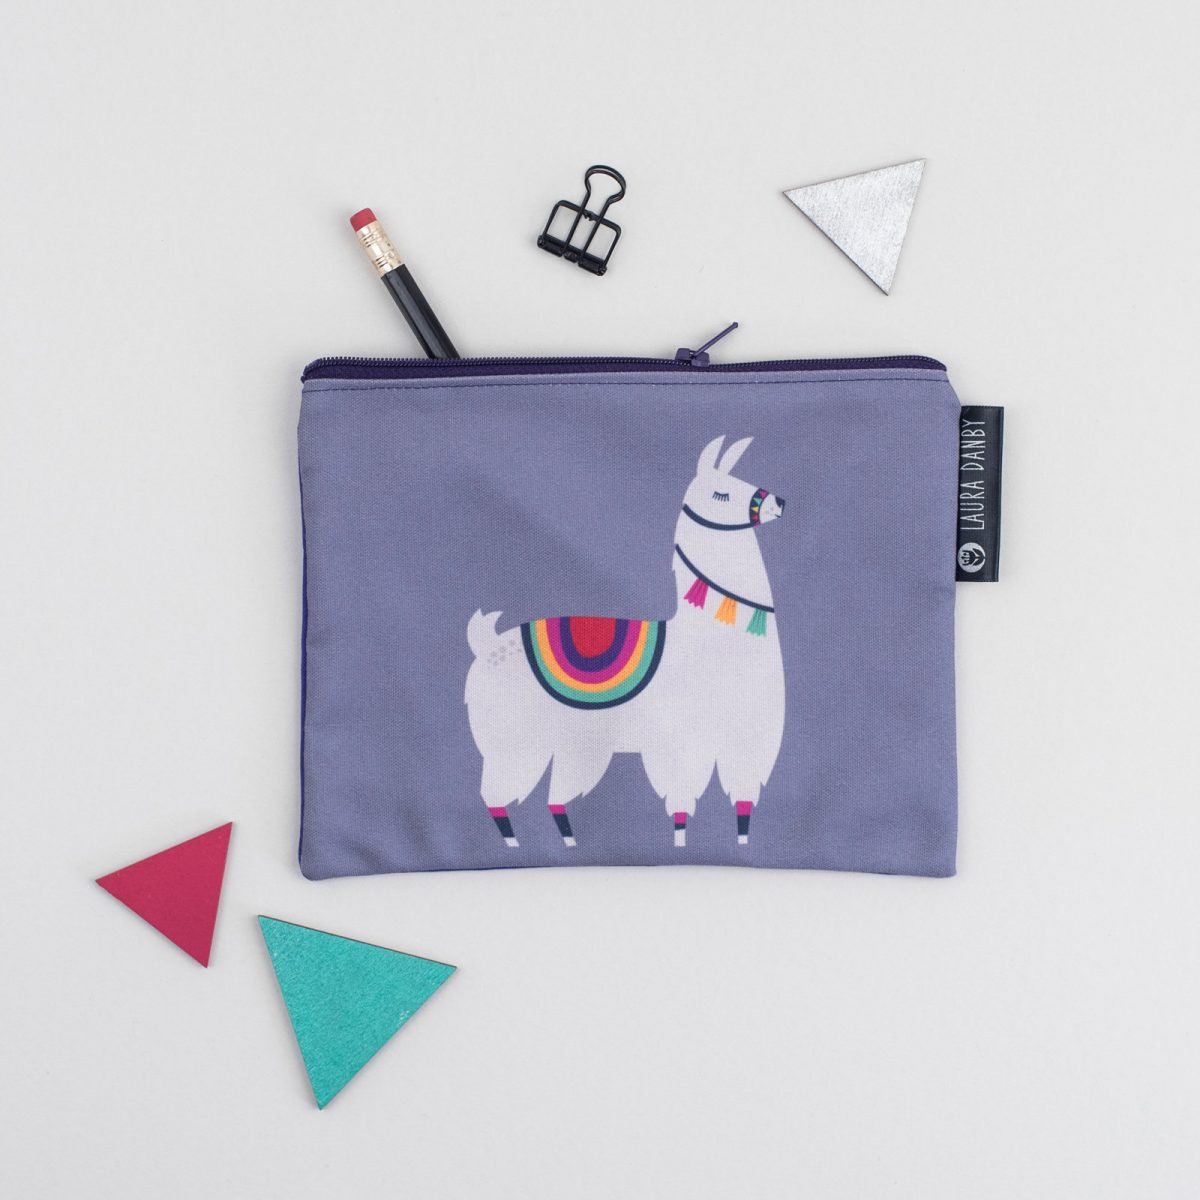 Llama Purse, Mexican Design, Pencil Case, Llama Gift, Tassel, Pom Pom, Rainbow Clutch Bag, Alpaca Pouch, Geometric Makeup Bag, Birthday Gift